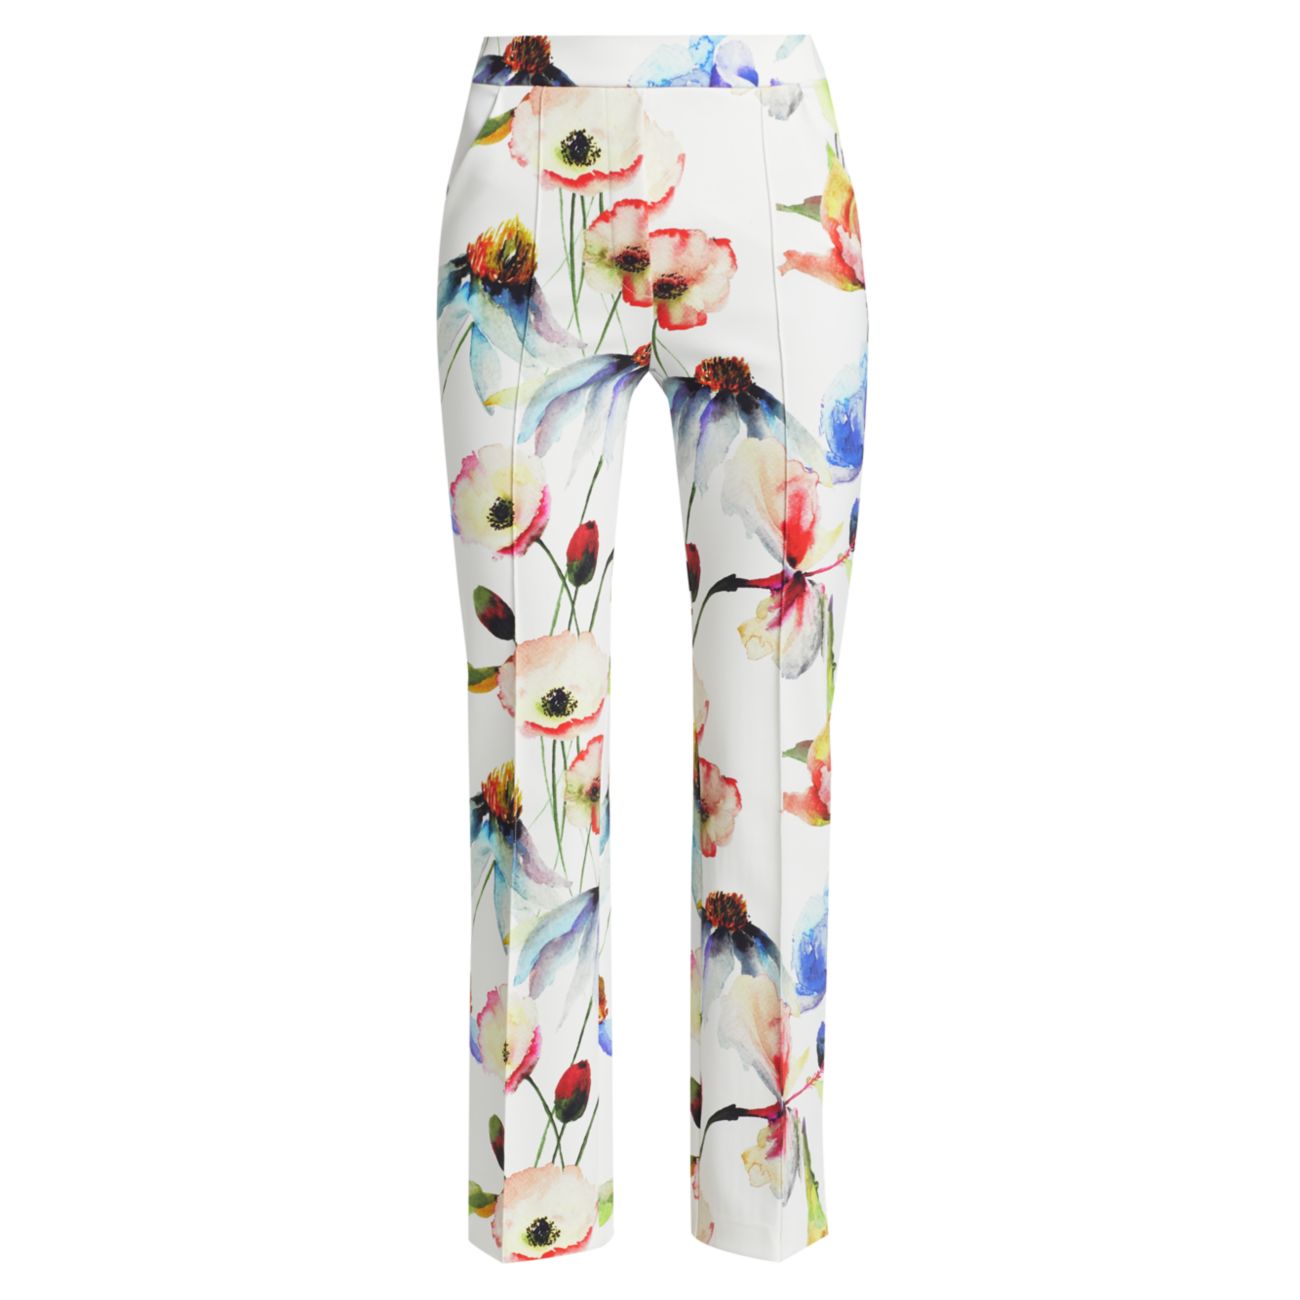 Укороченные брюки из эластичного джерси с цветочным рисунком Nuccia Chiara Boni La Petite Robe